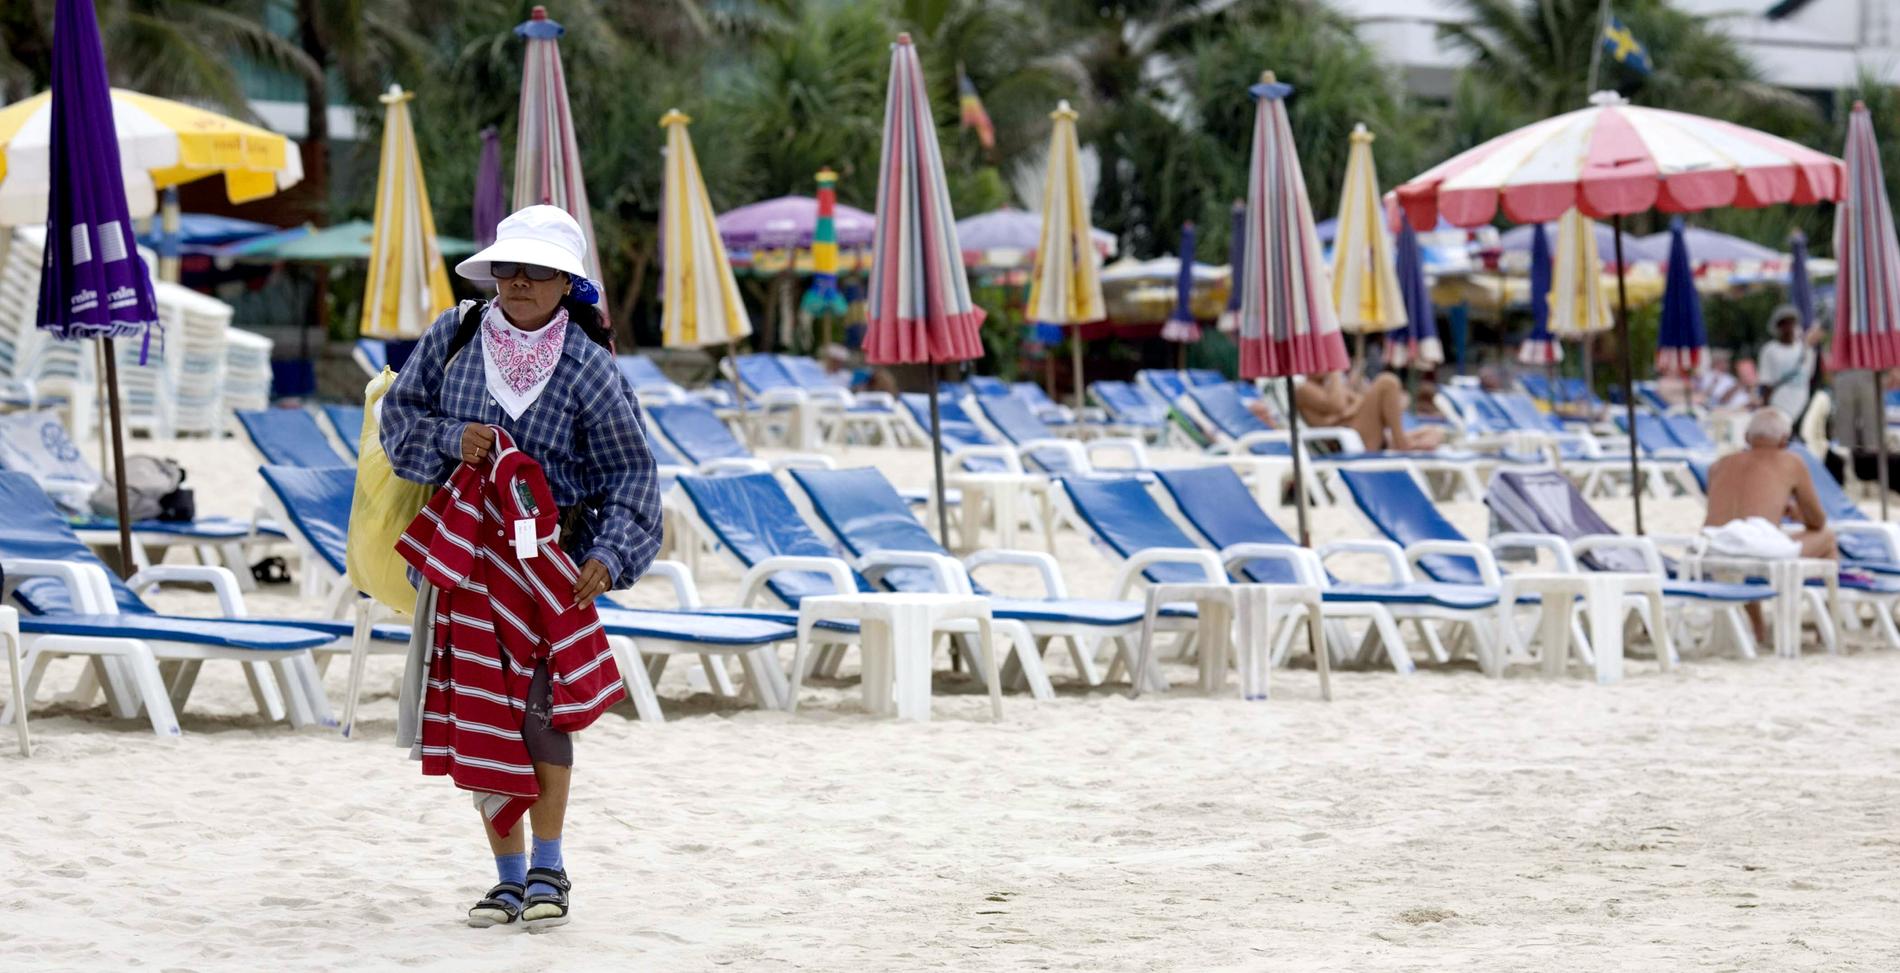 Strandförsäljarna har blivit för många och förstör stranden, anser Phukets senatorer.